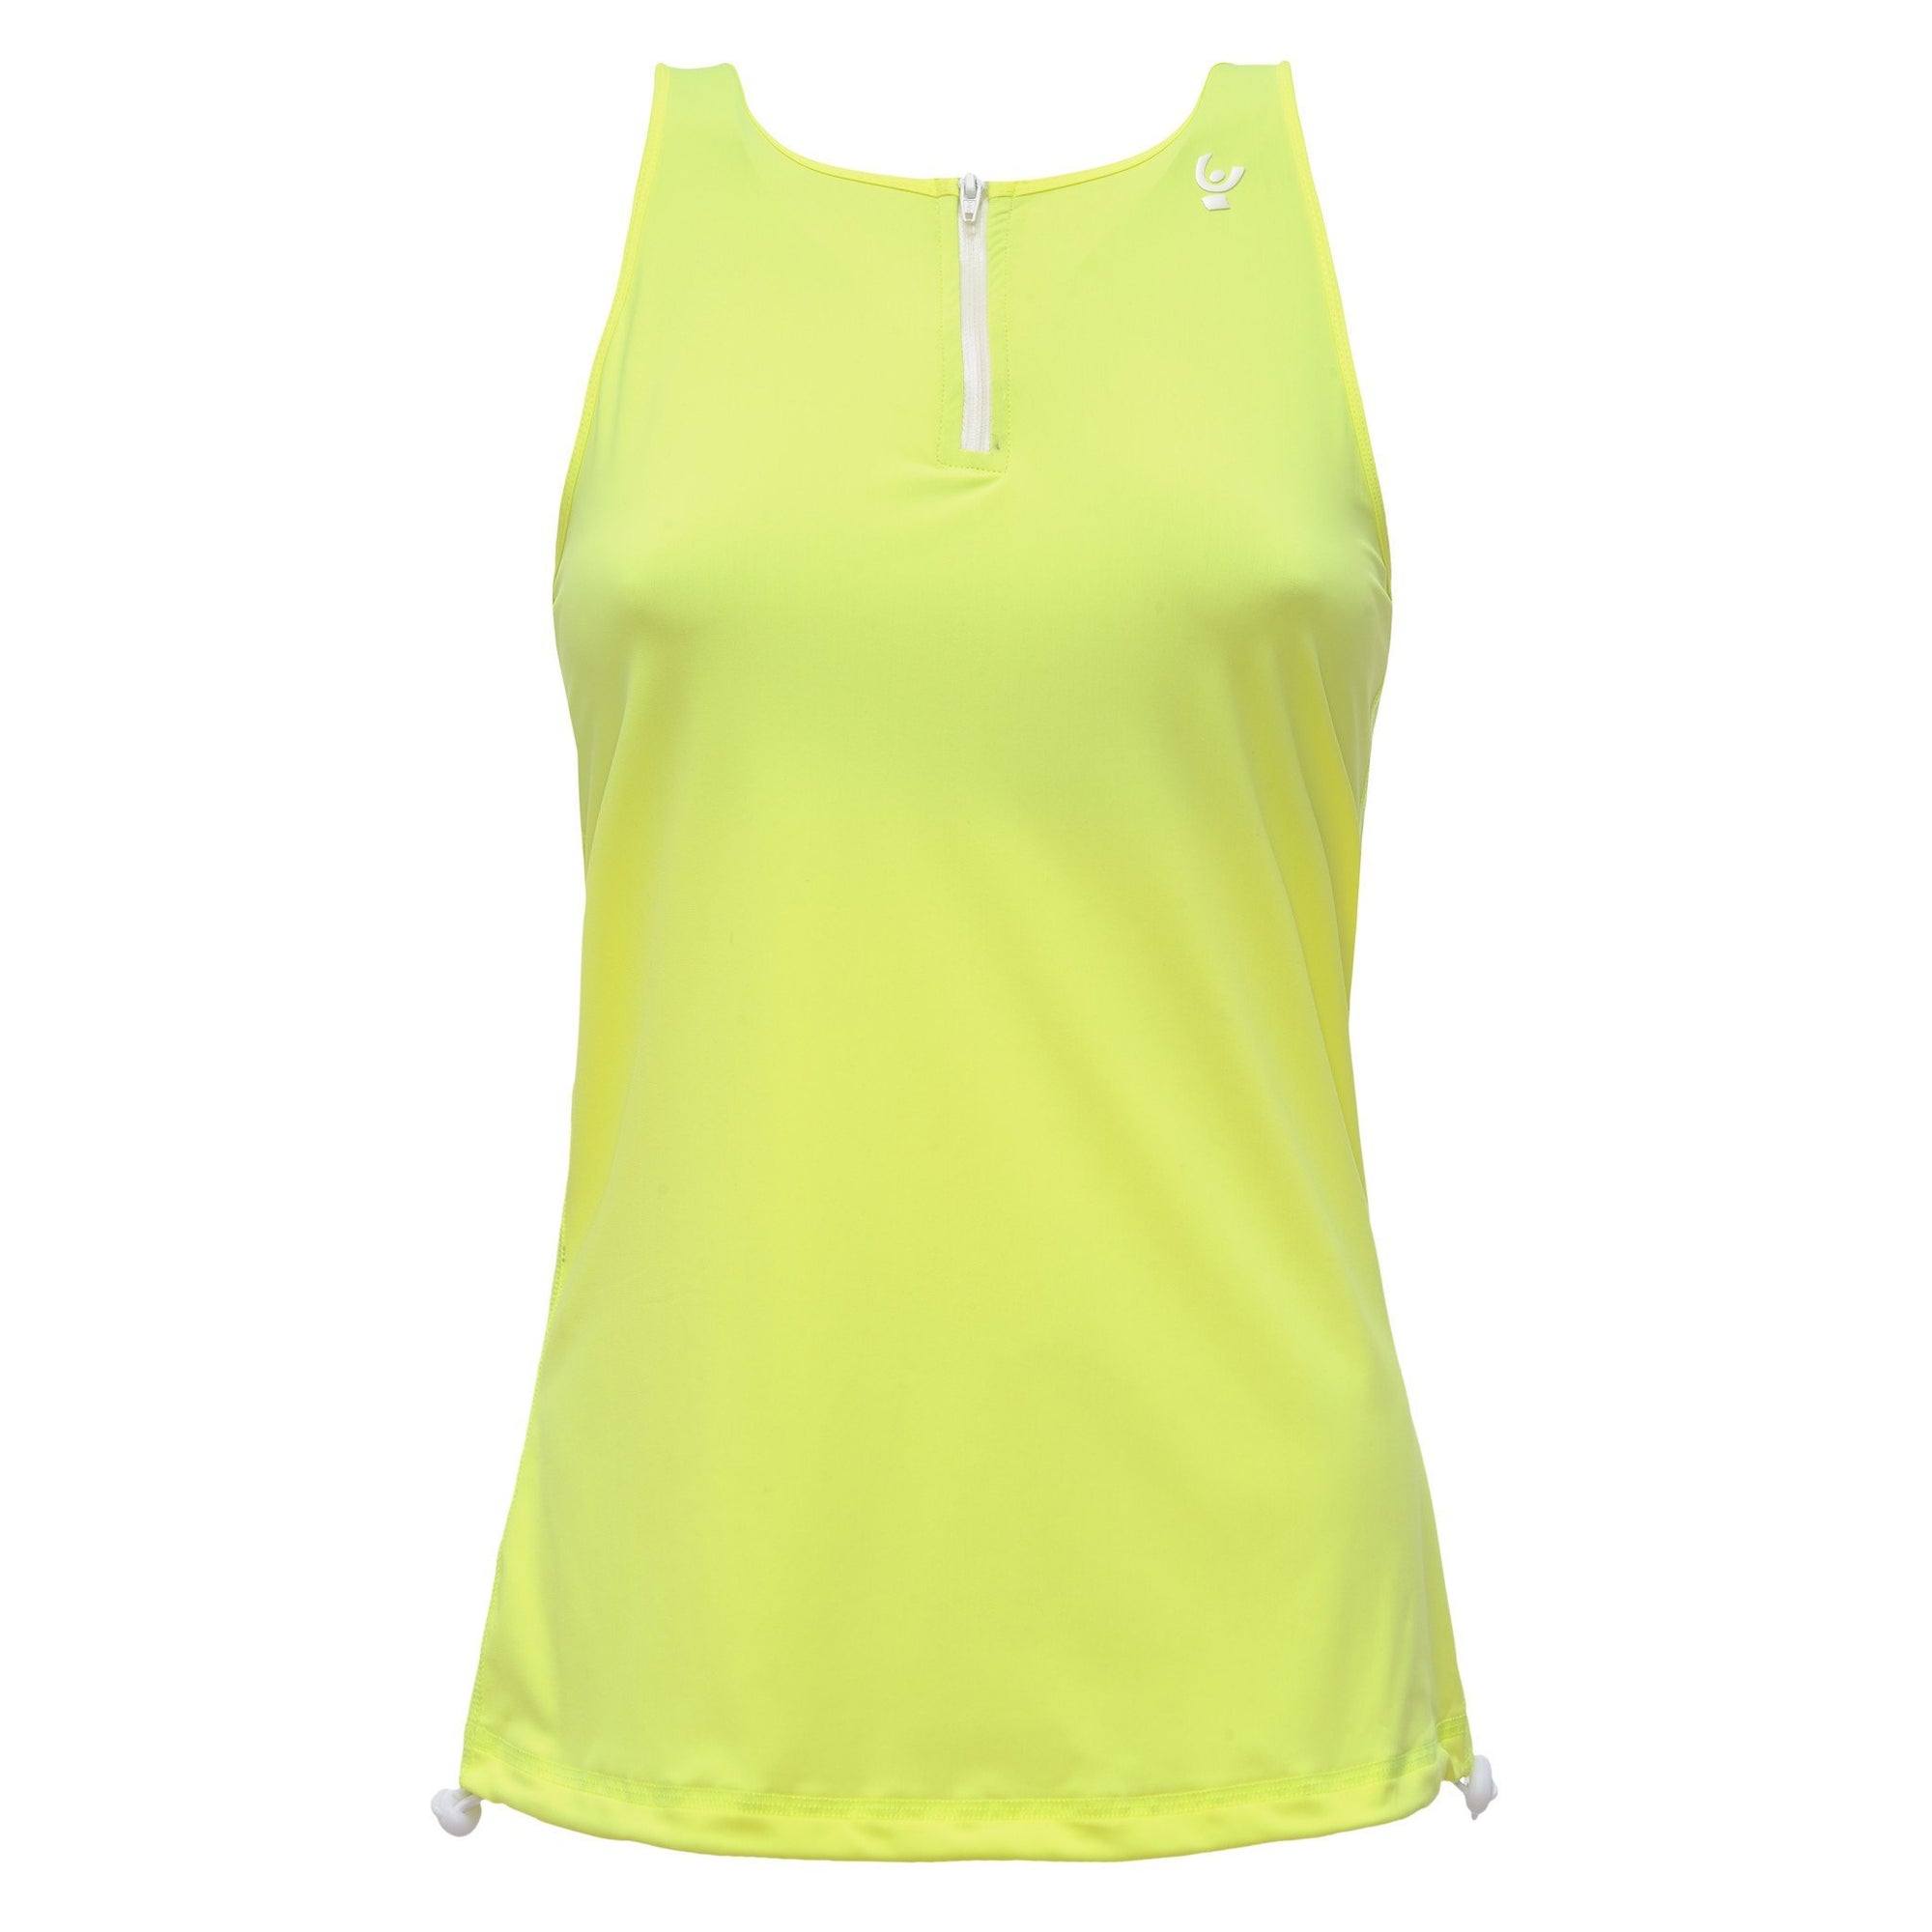 Neon Yellow Activewear Tank Top